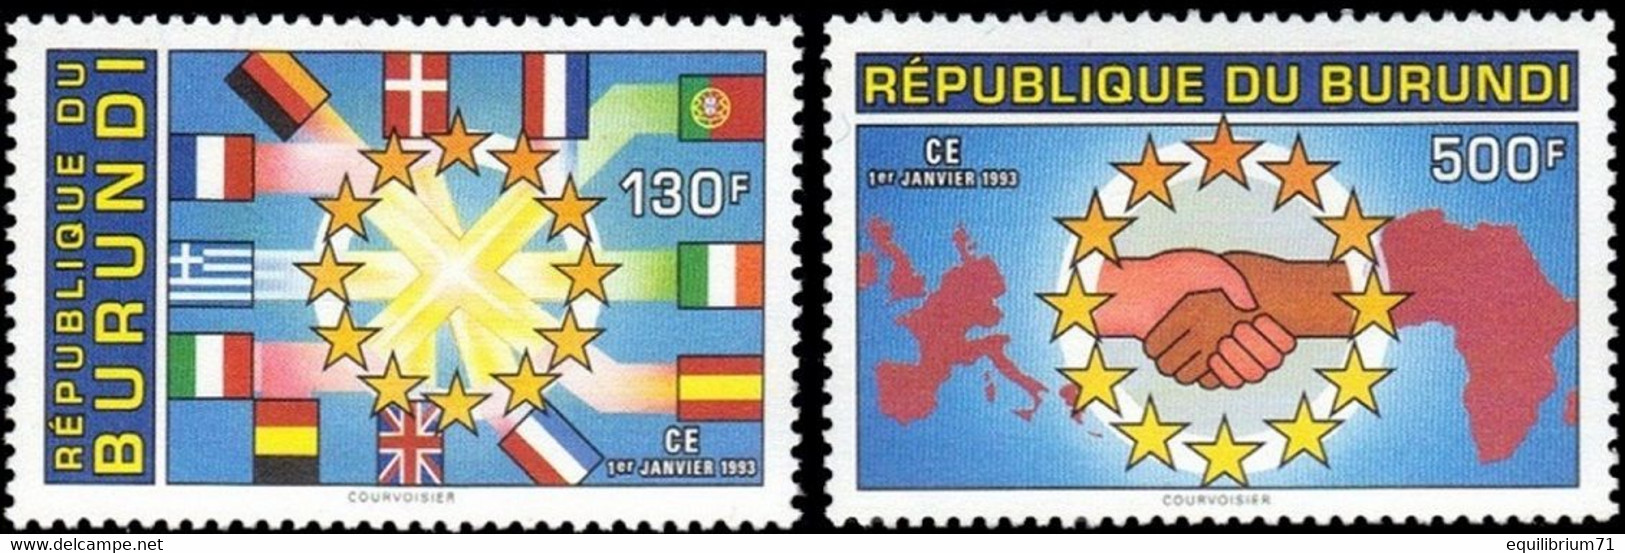 1020/1021** - Marché Unique Européen / Gezamenlijke Europese Markt / Europäischer Binnenmarkt - BURUNDI - Unused Stamps